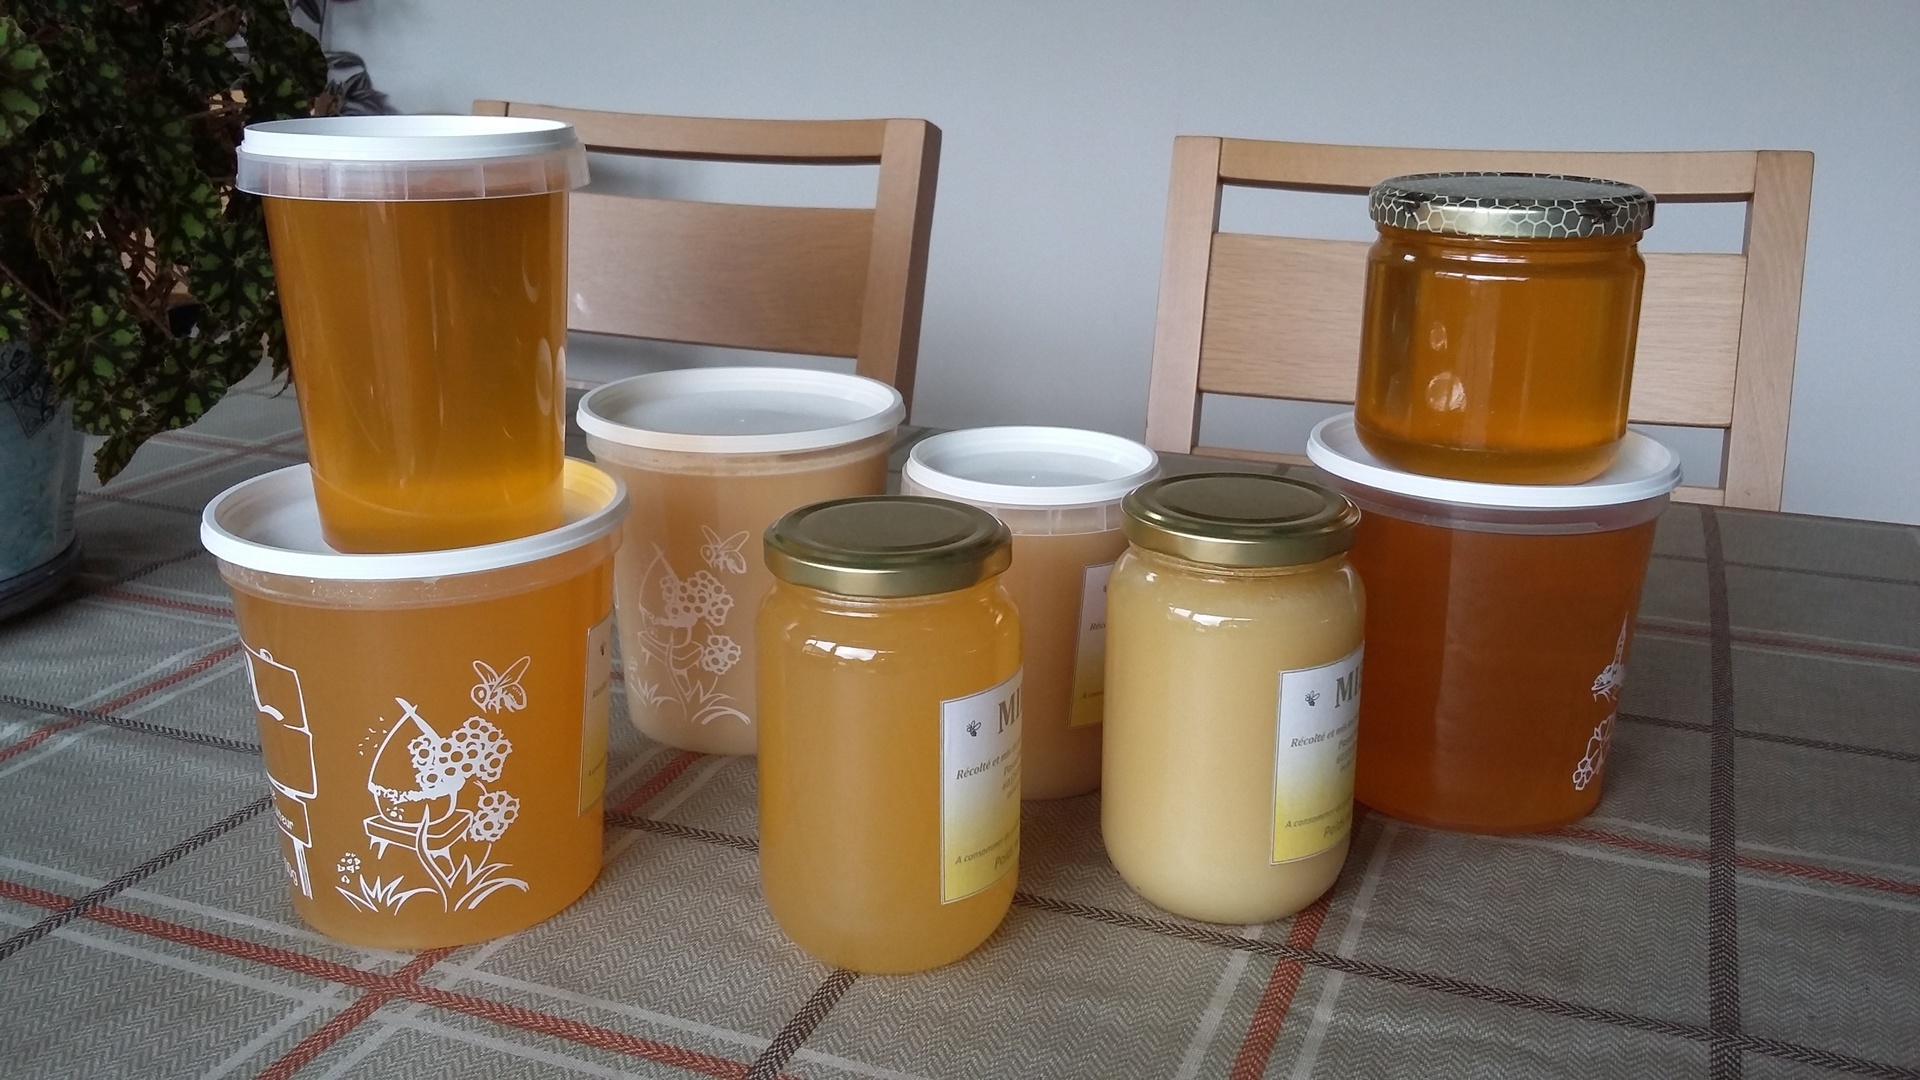 Boutique Miel apiculteur amateur - J'achte Oise Picarde